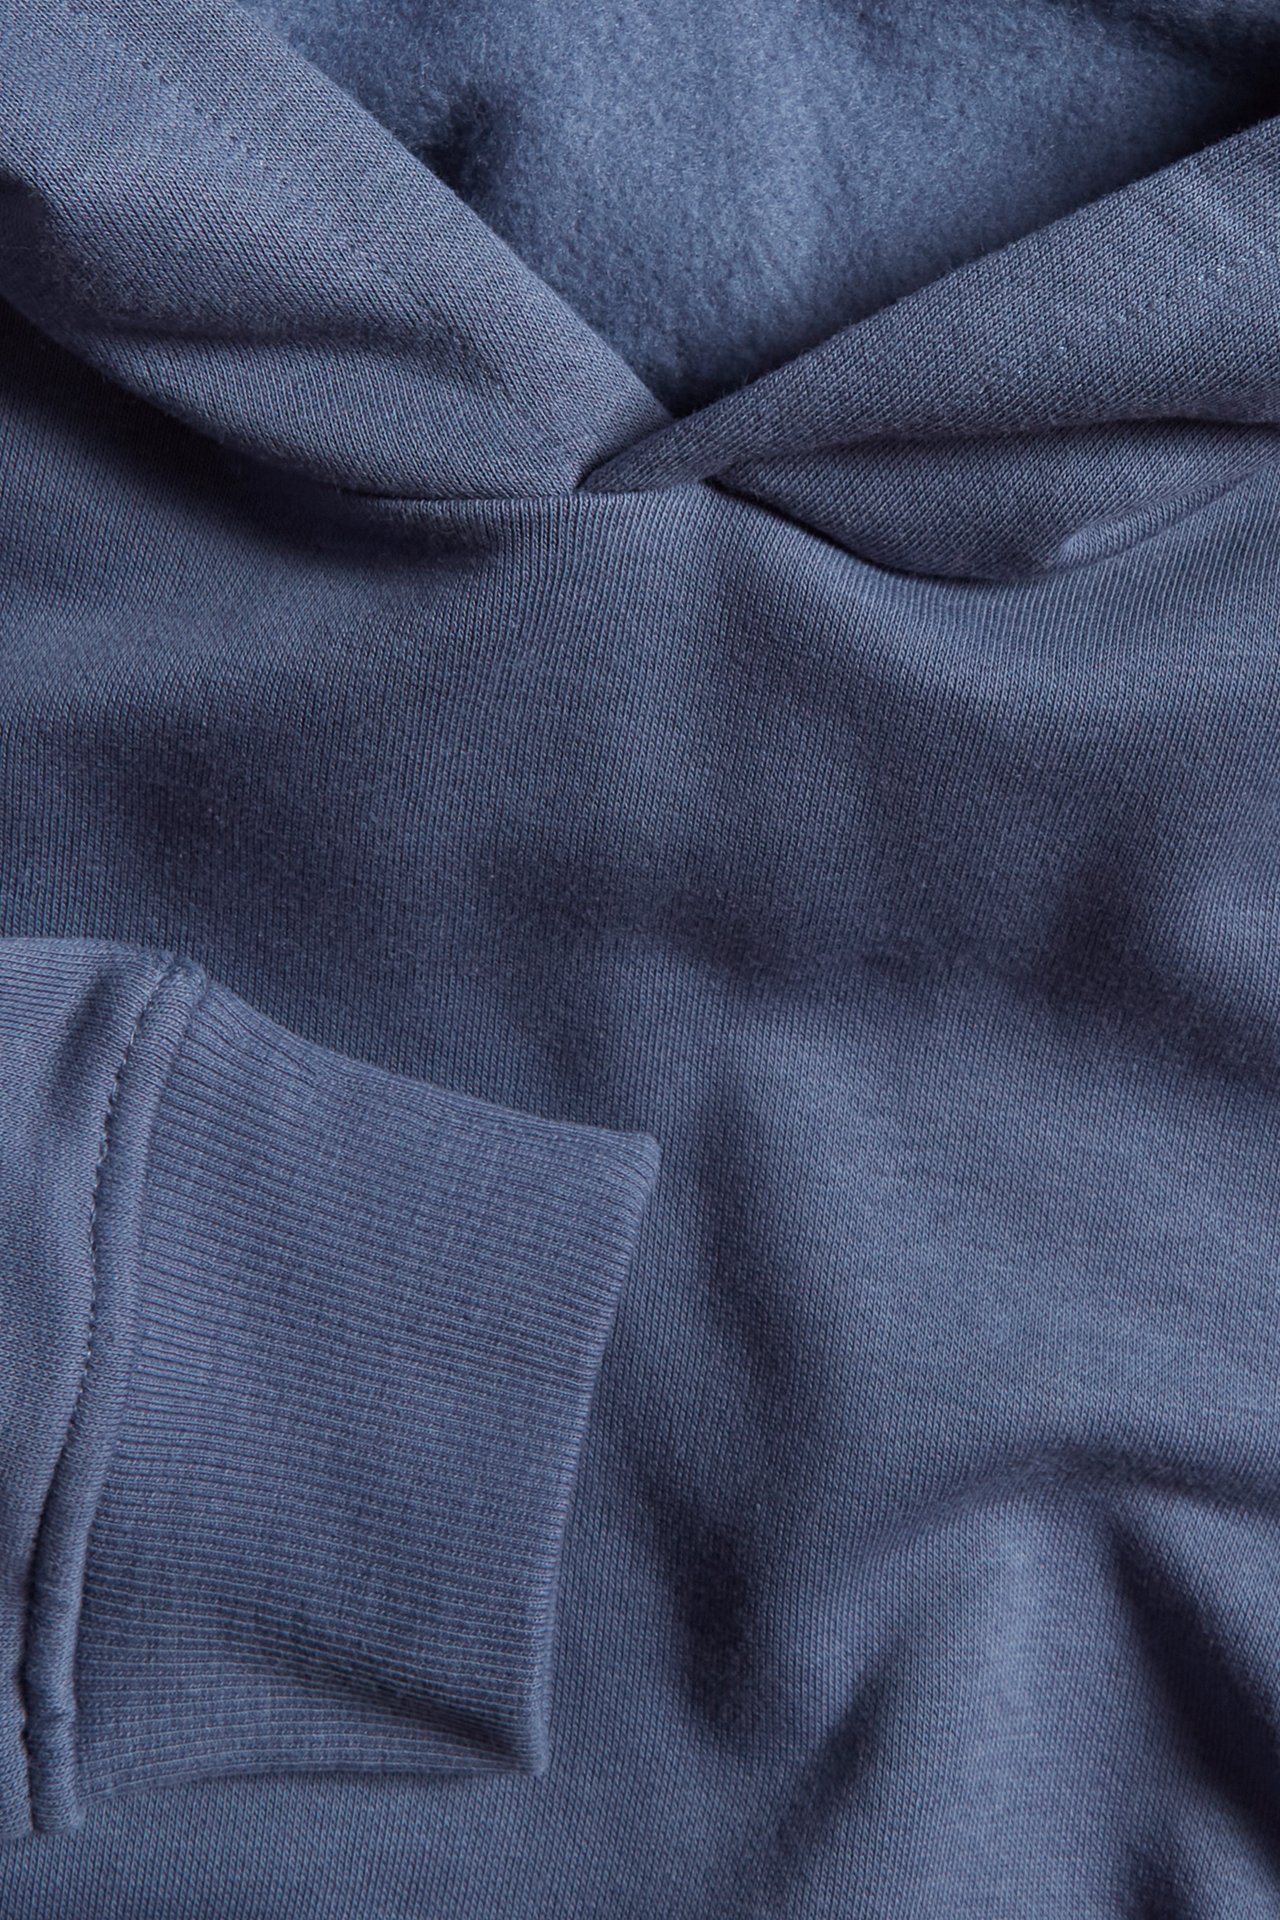 Bluza z kapturem - Niebieski - 1